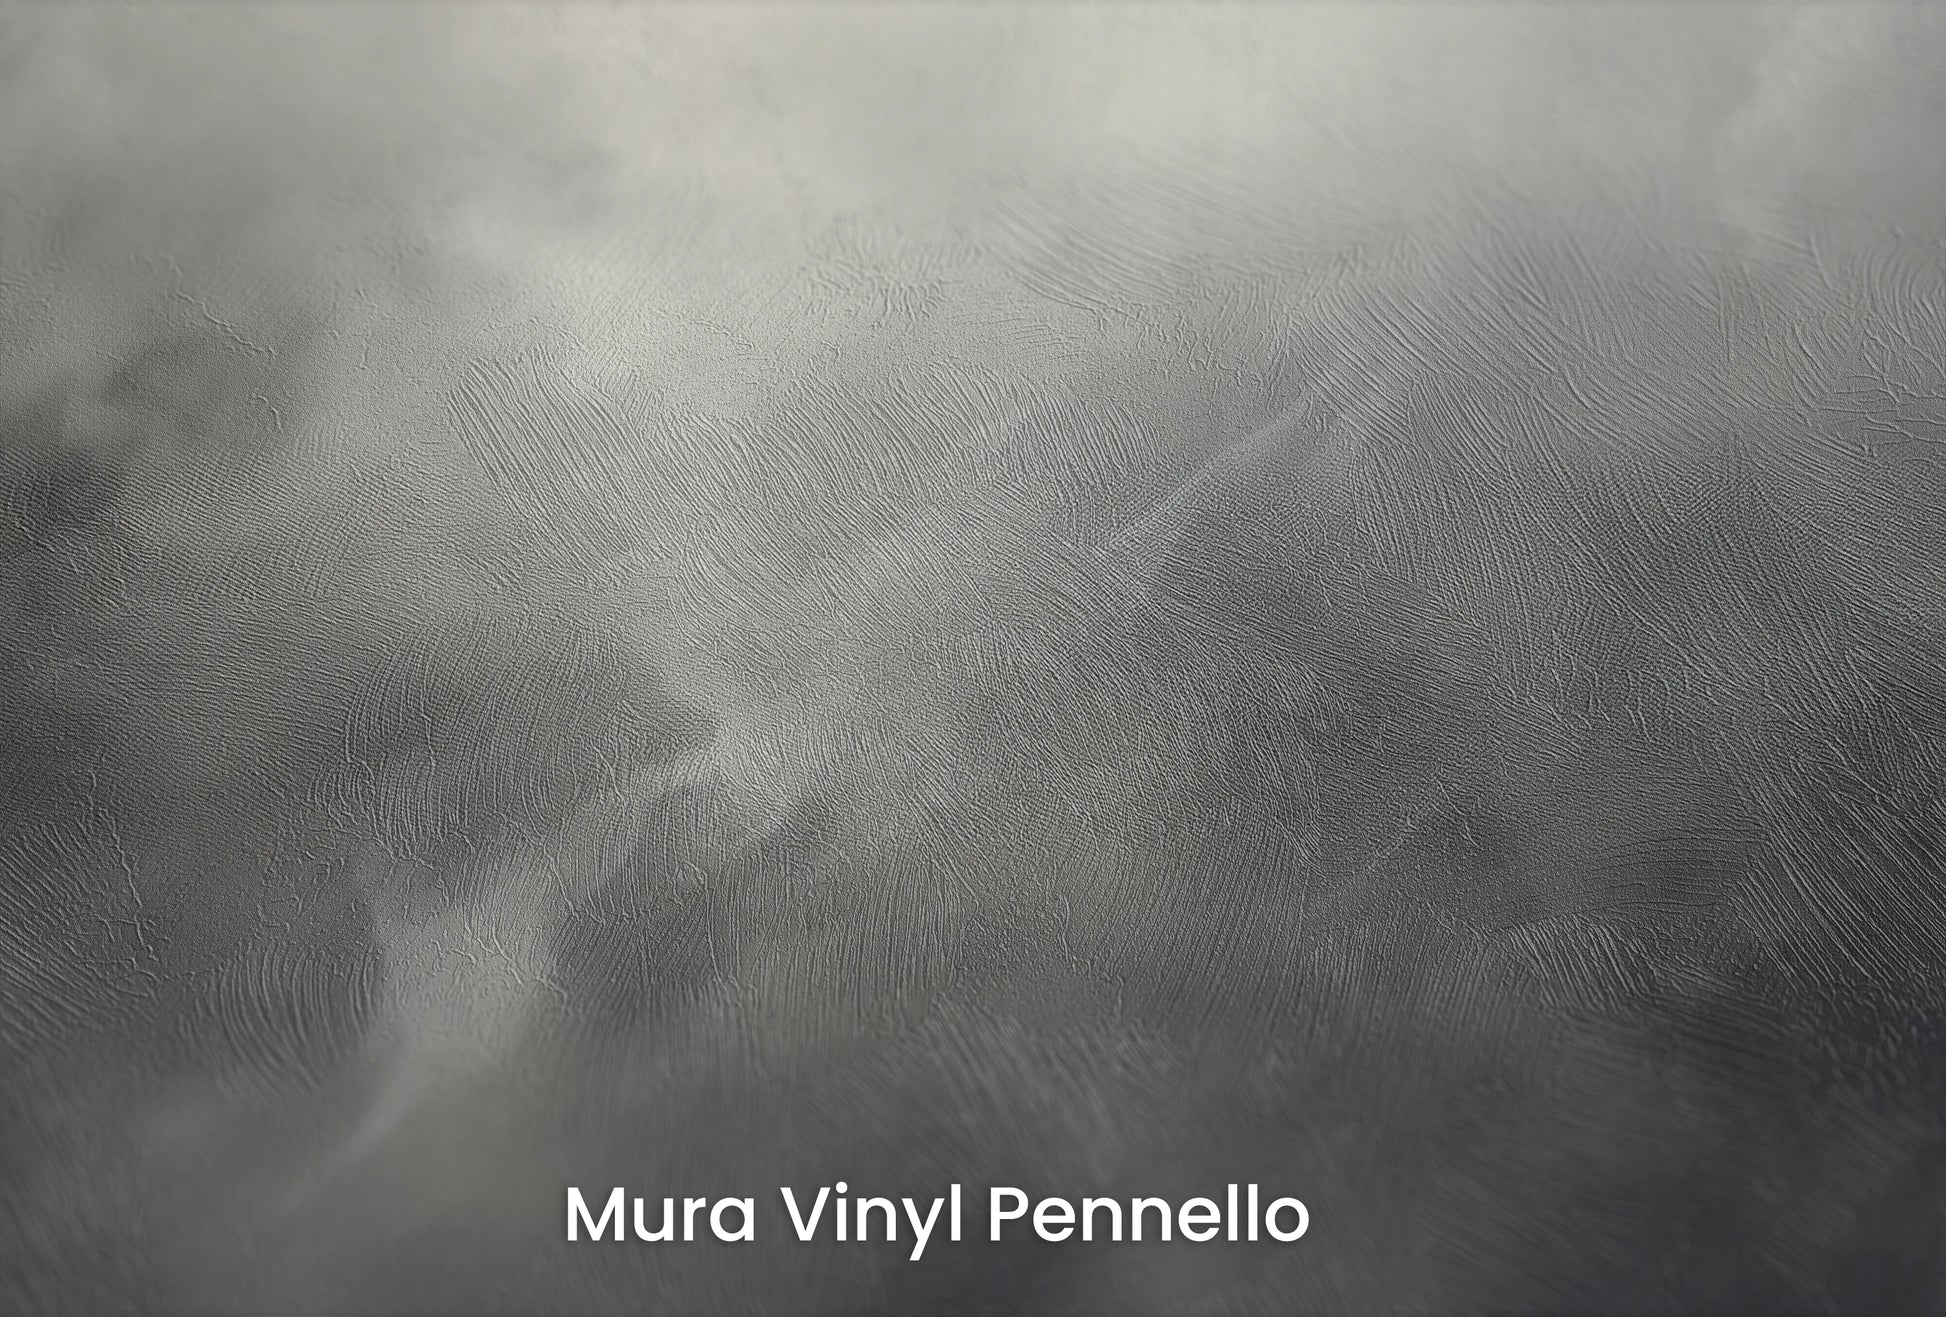 Zbliżenie na artystyczną fototapetę o nazwie Silver Storm na podłożu Mura Vinyl Pennello - faktura pociągnięć pędzla malarskiego.